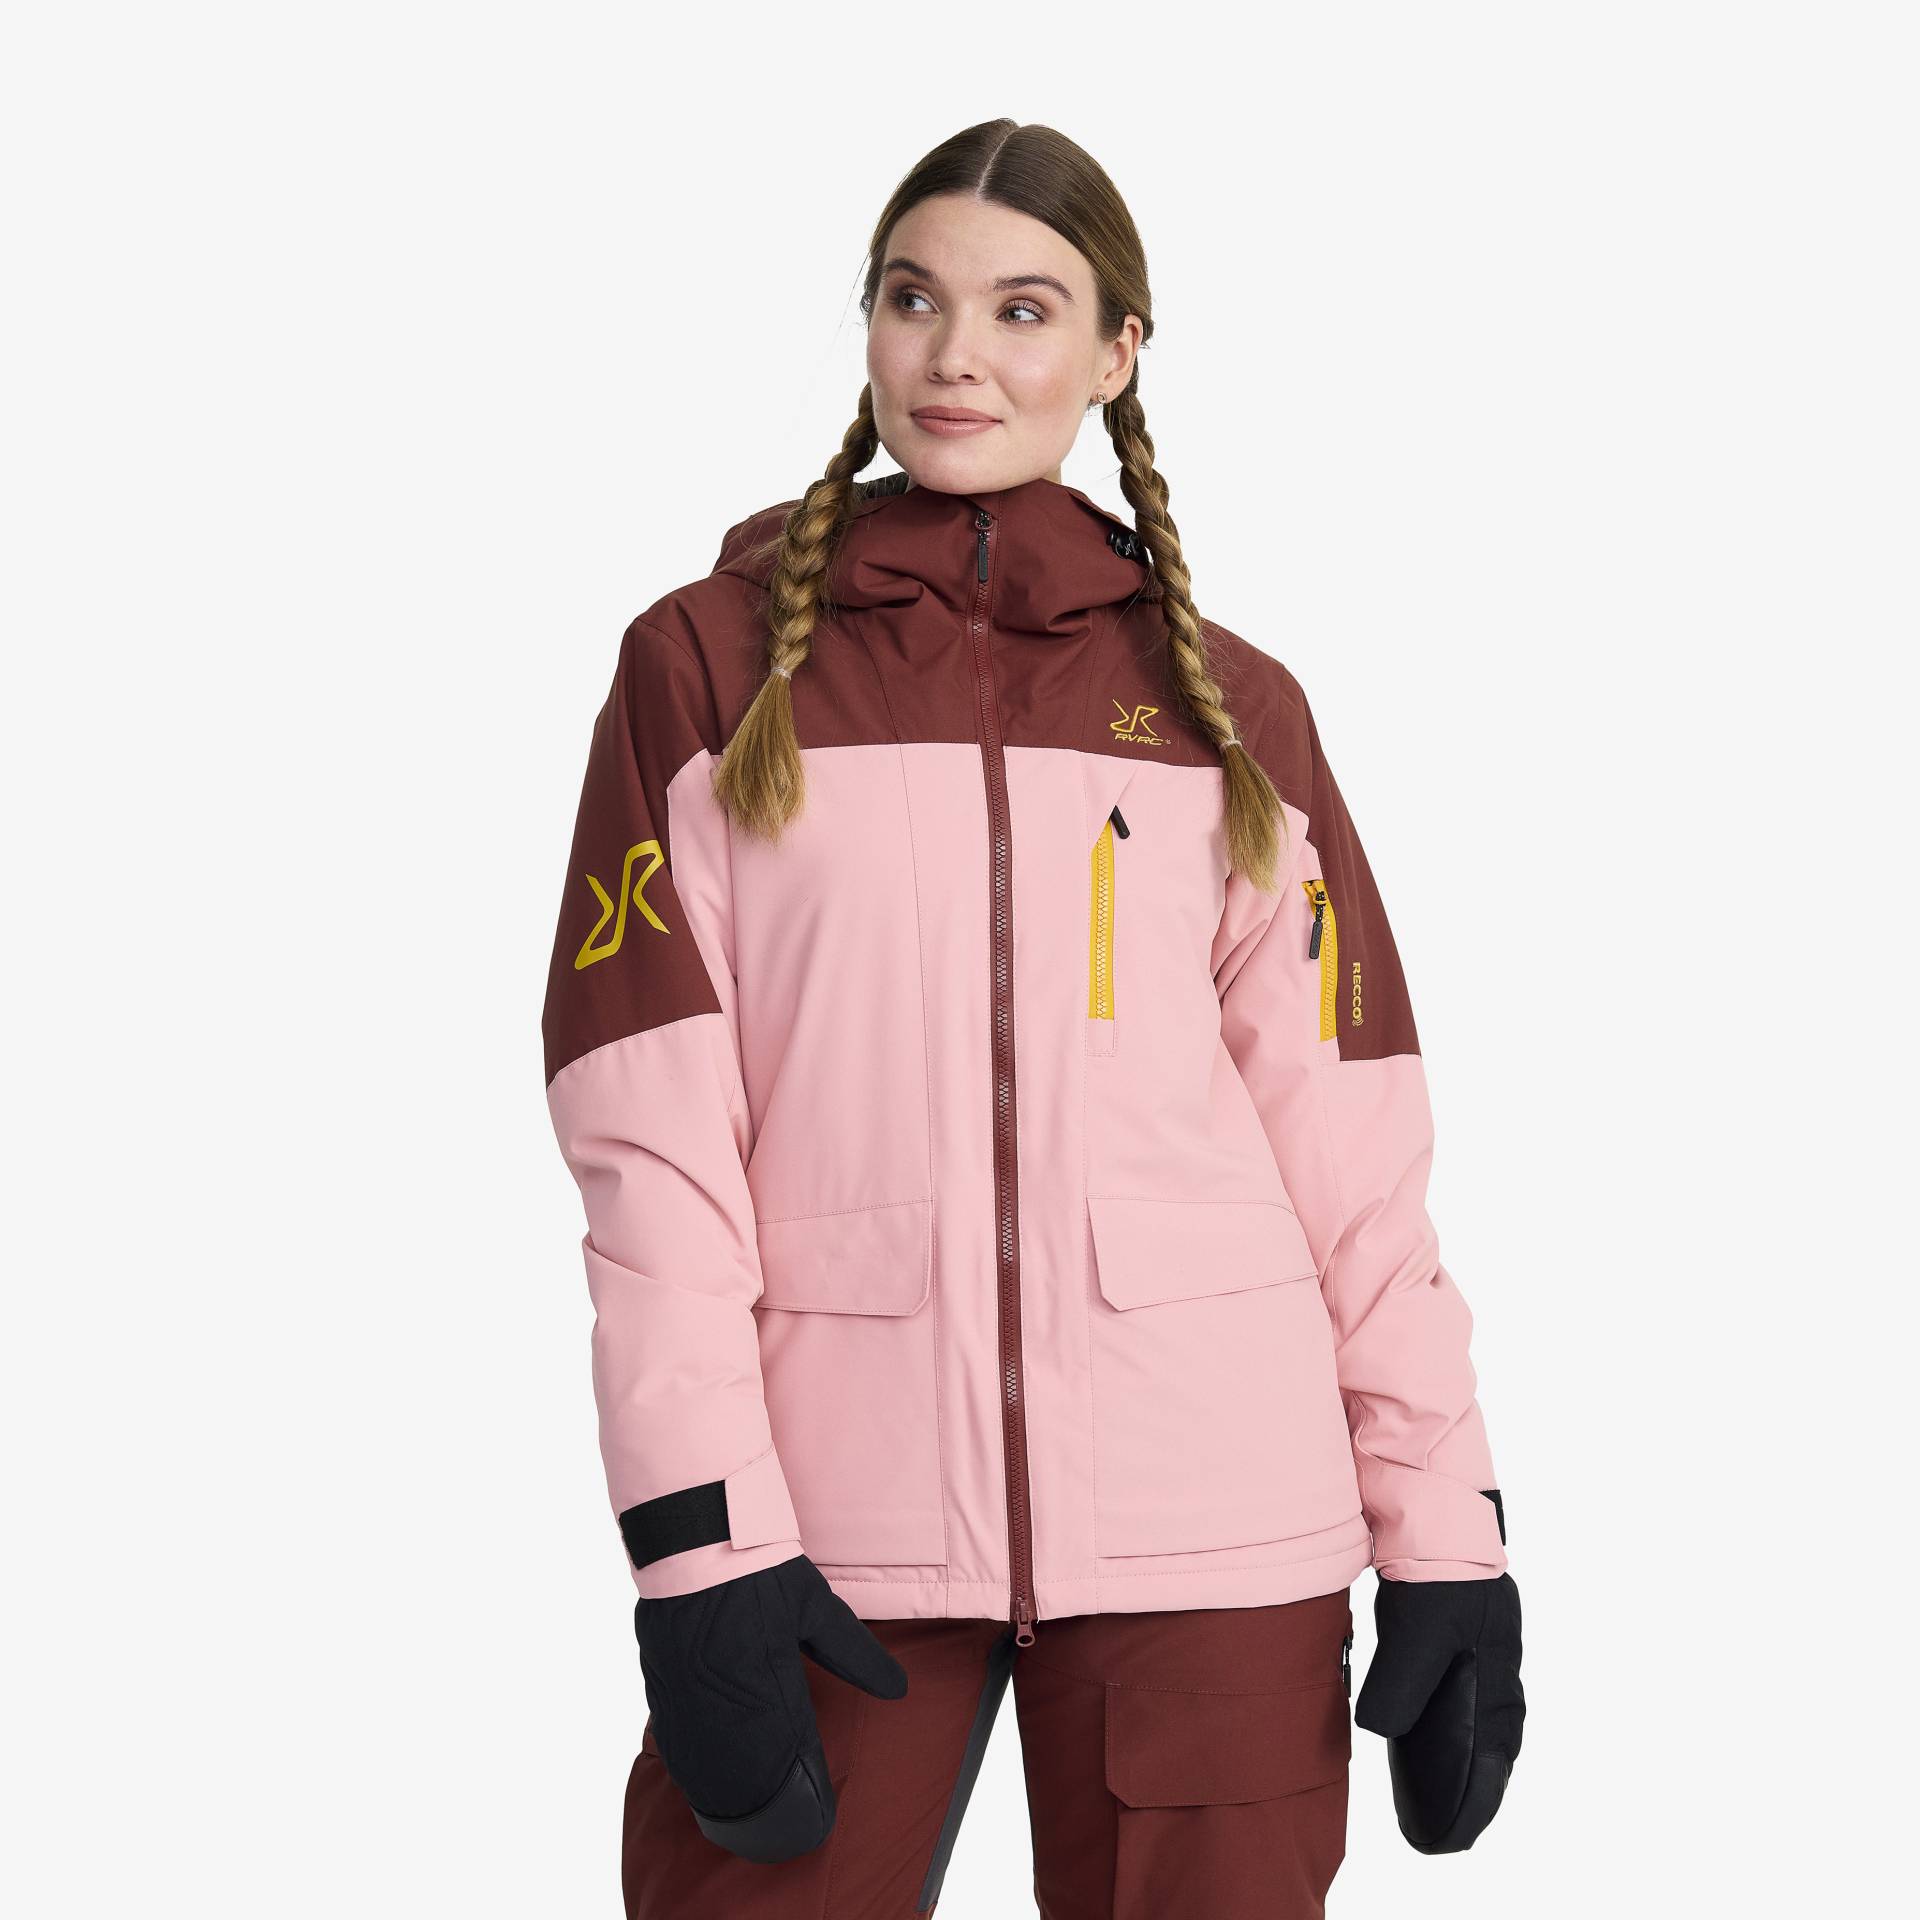 Halo 2L Insulated Ski Jacket Damen Blush, Größe:2XL - Skijacken von RevolutionRace